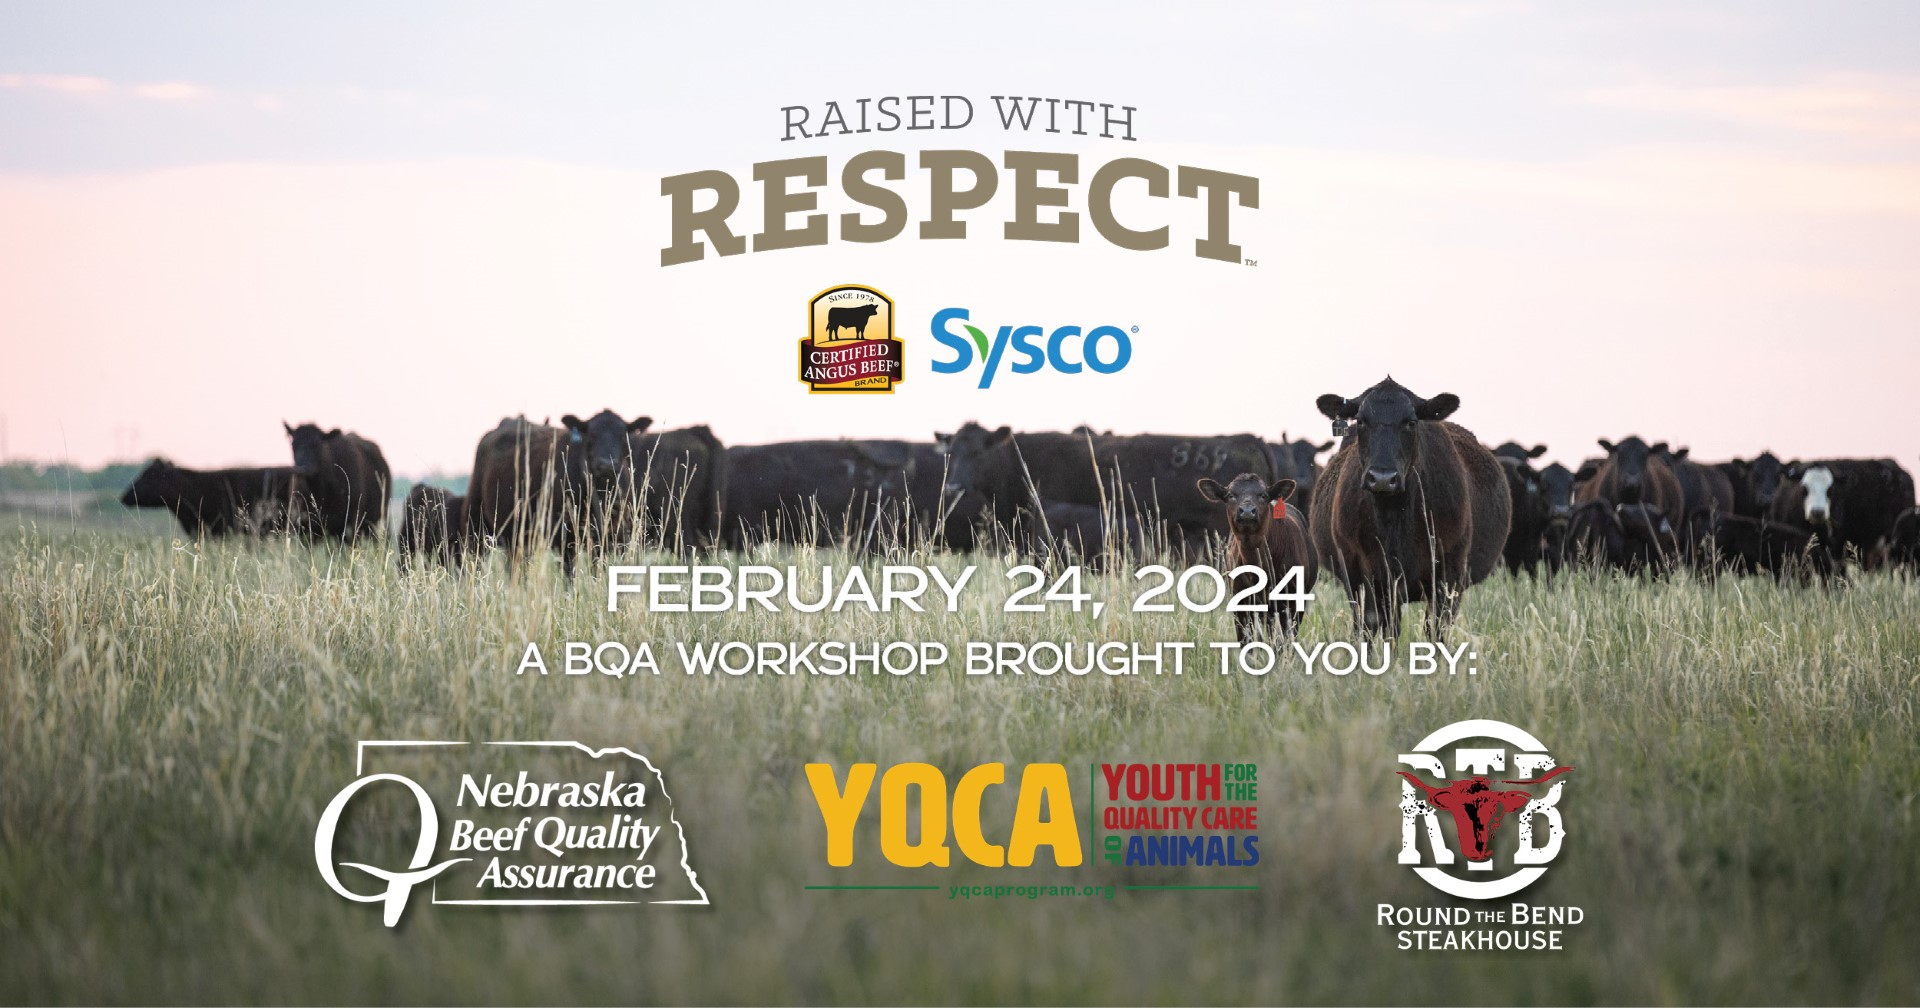 Nebraska BQA Workshop  & YQCA Opportunity